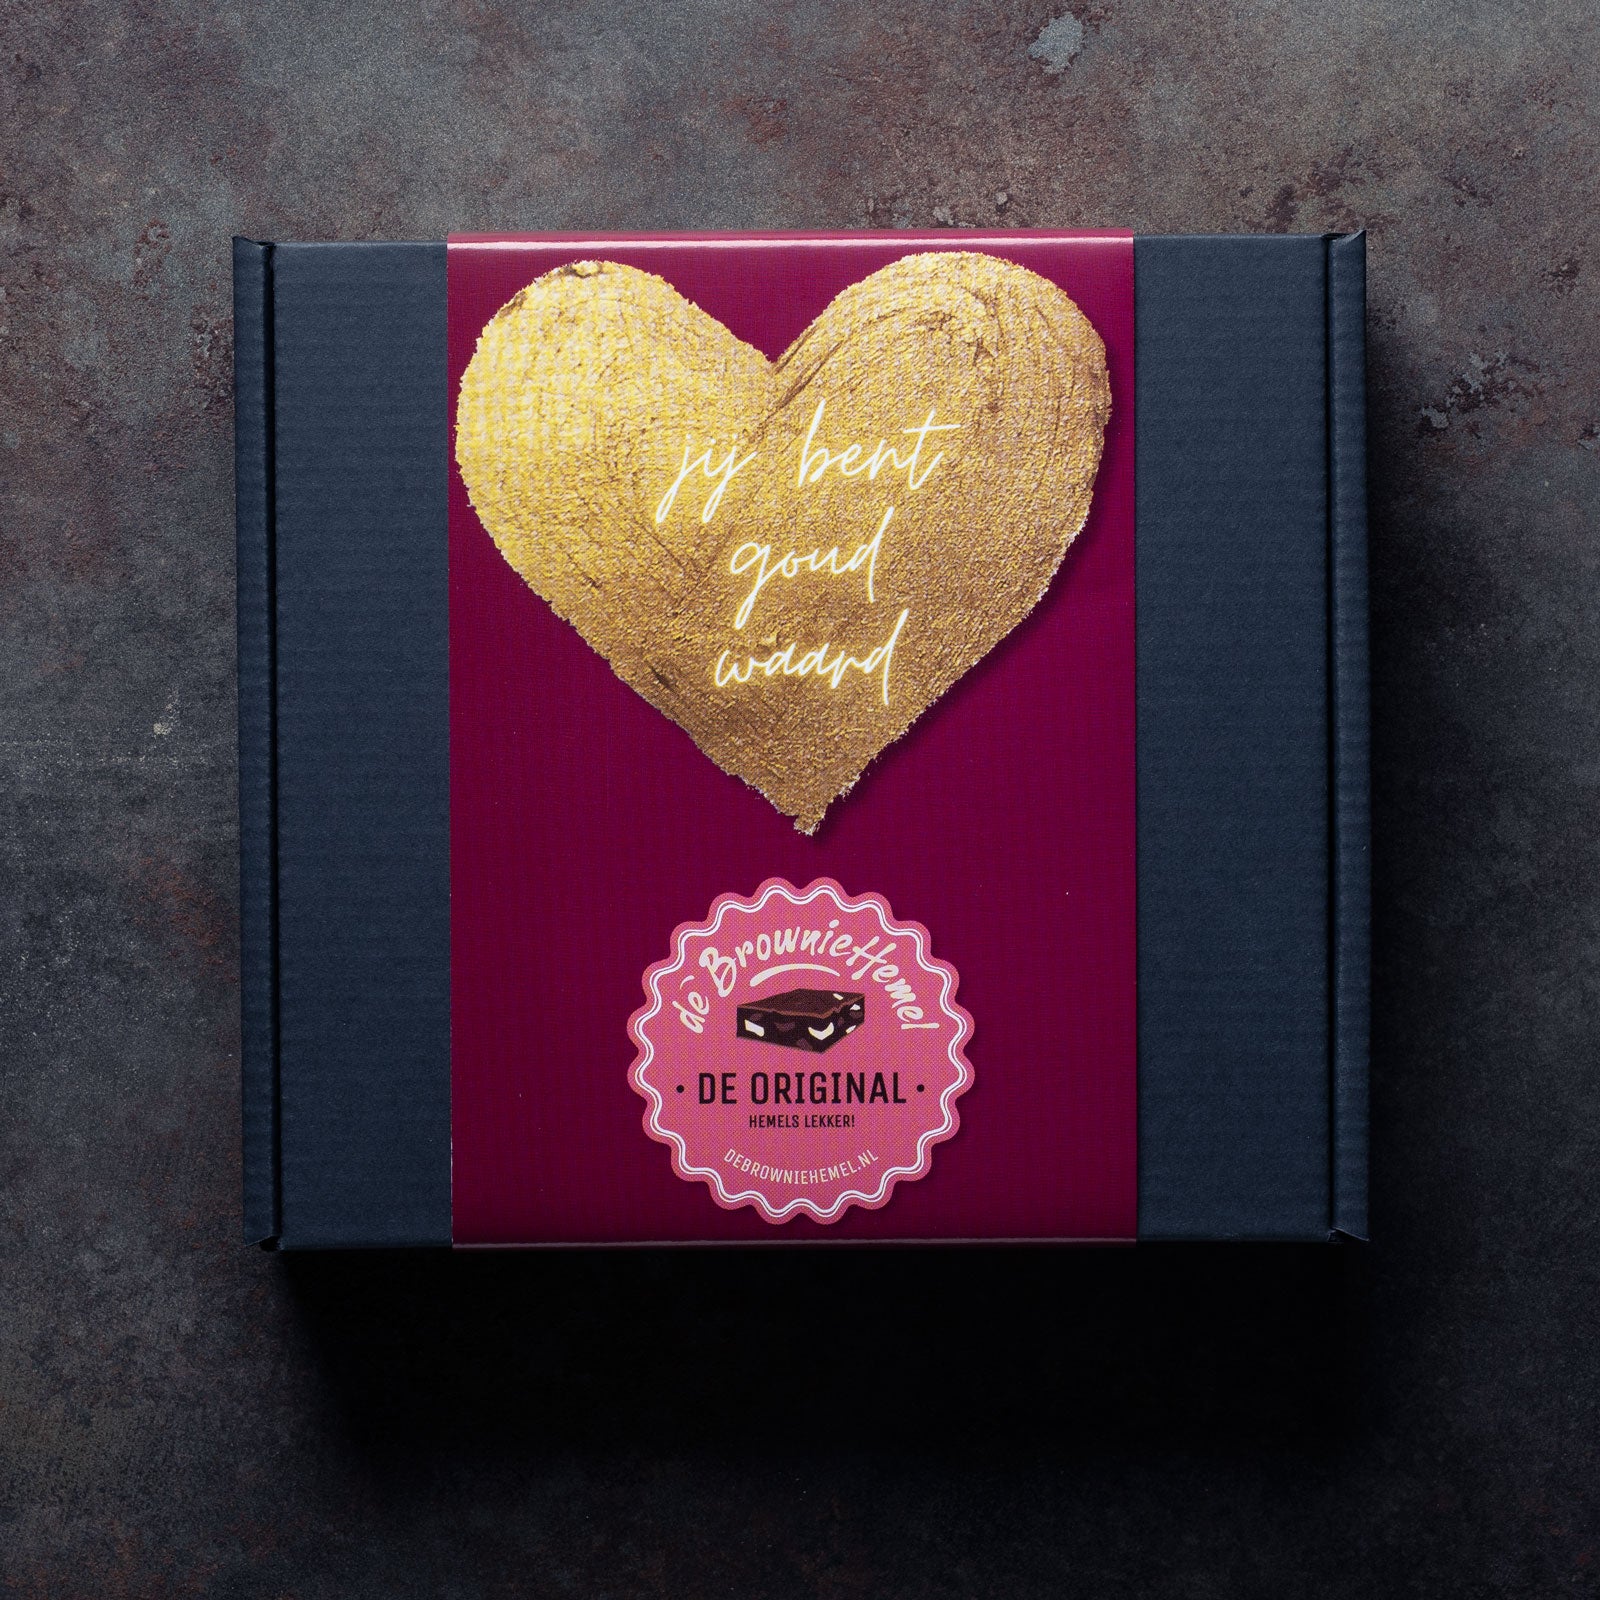 De 'Jij bent goud waard' Giftbox. 4 Hemelse Brownies van De Browniehemel om cadeau te geven. 